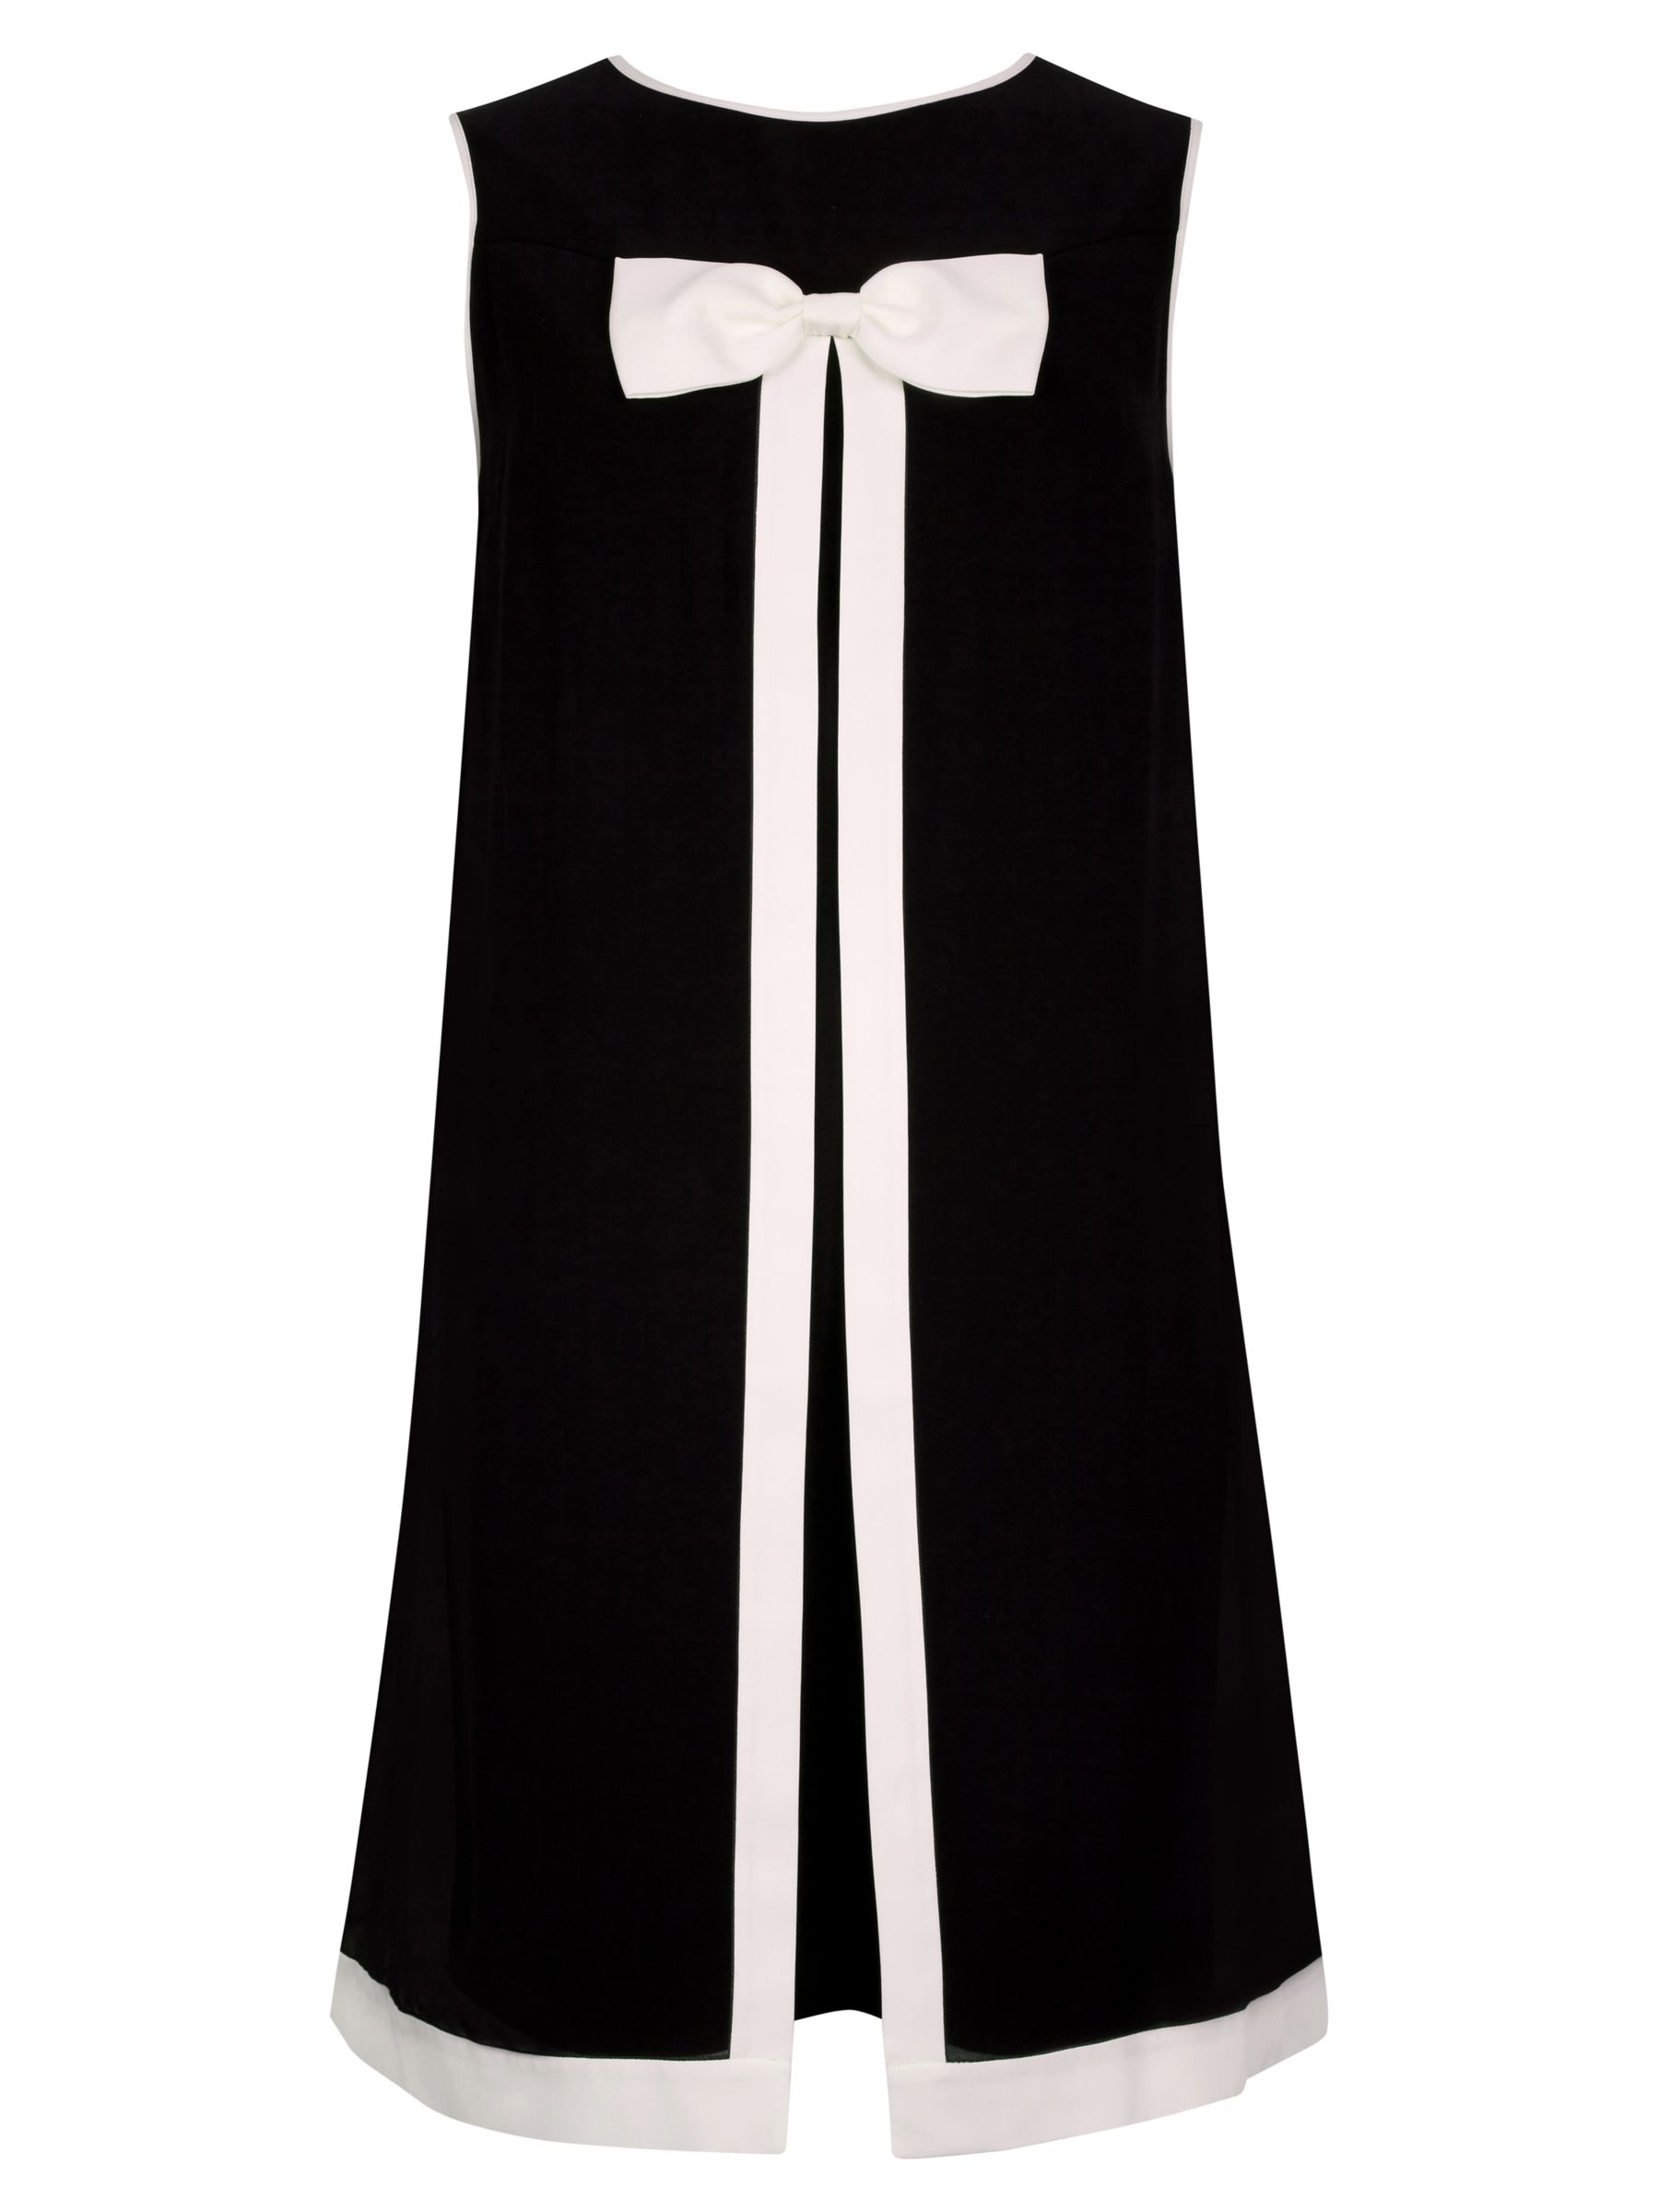 Ted Baker Bow Detail Swing Dress, Black/White at John Lewis & Partners